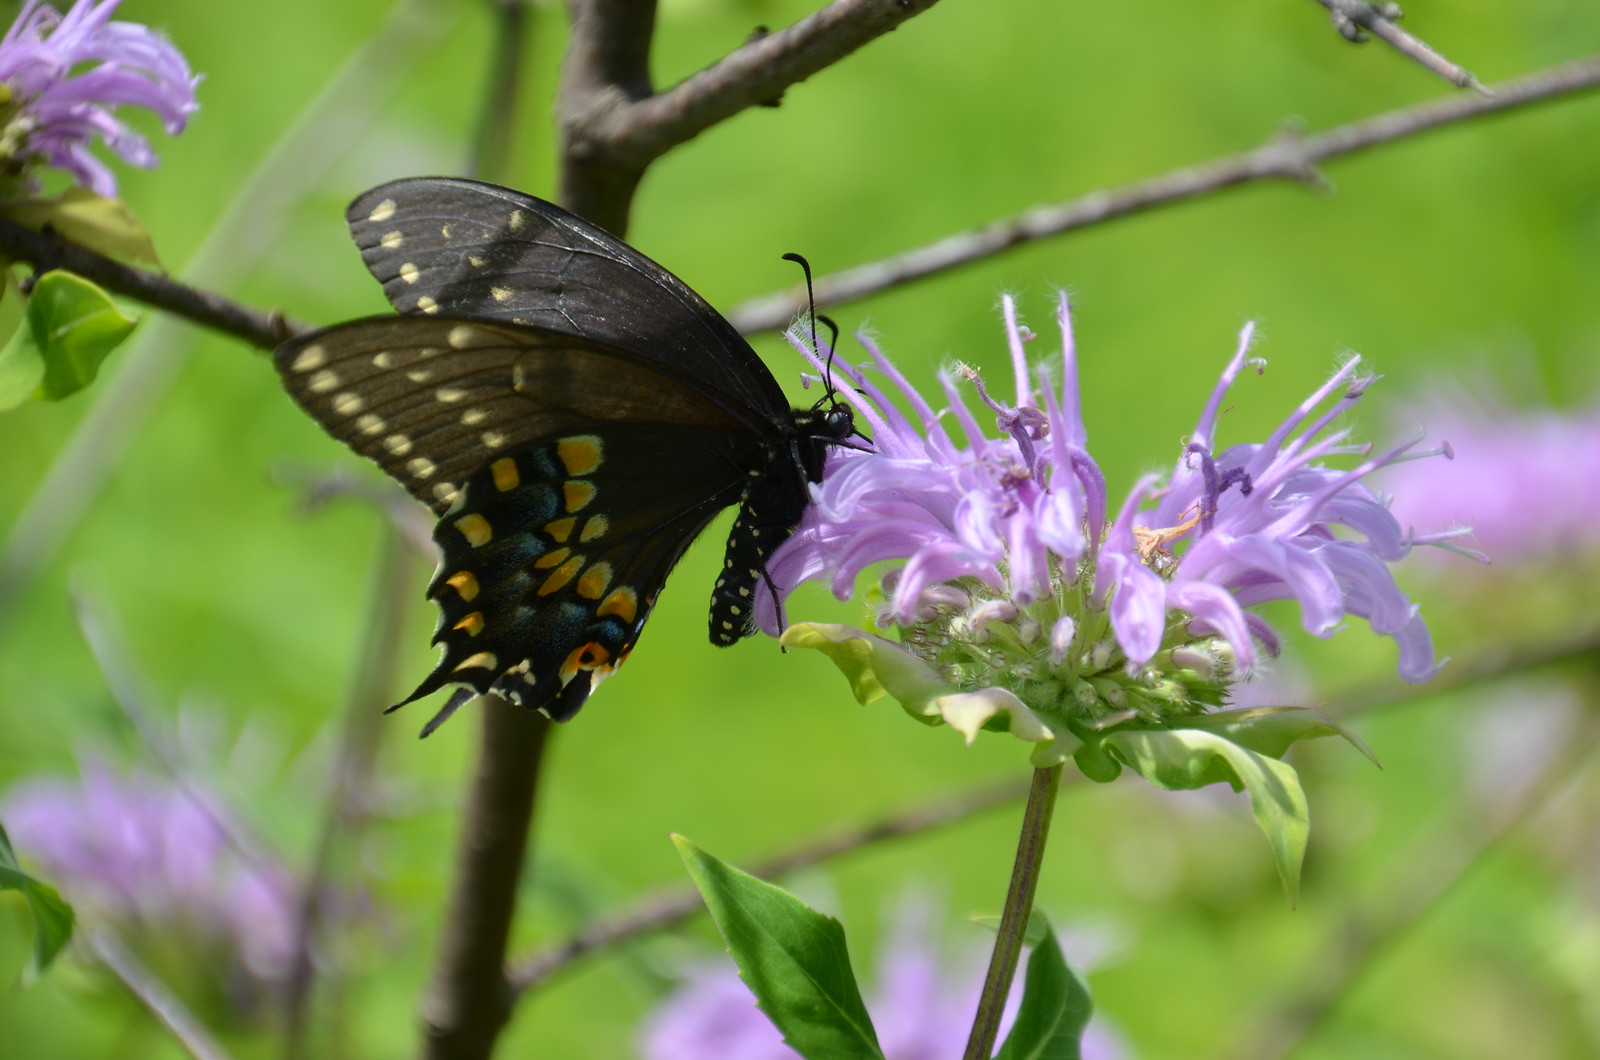 Swallowtail butterfly on Monarda